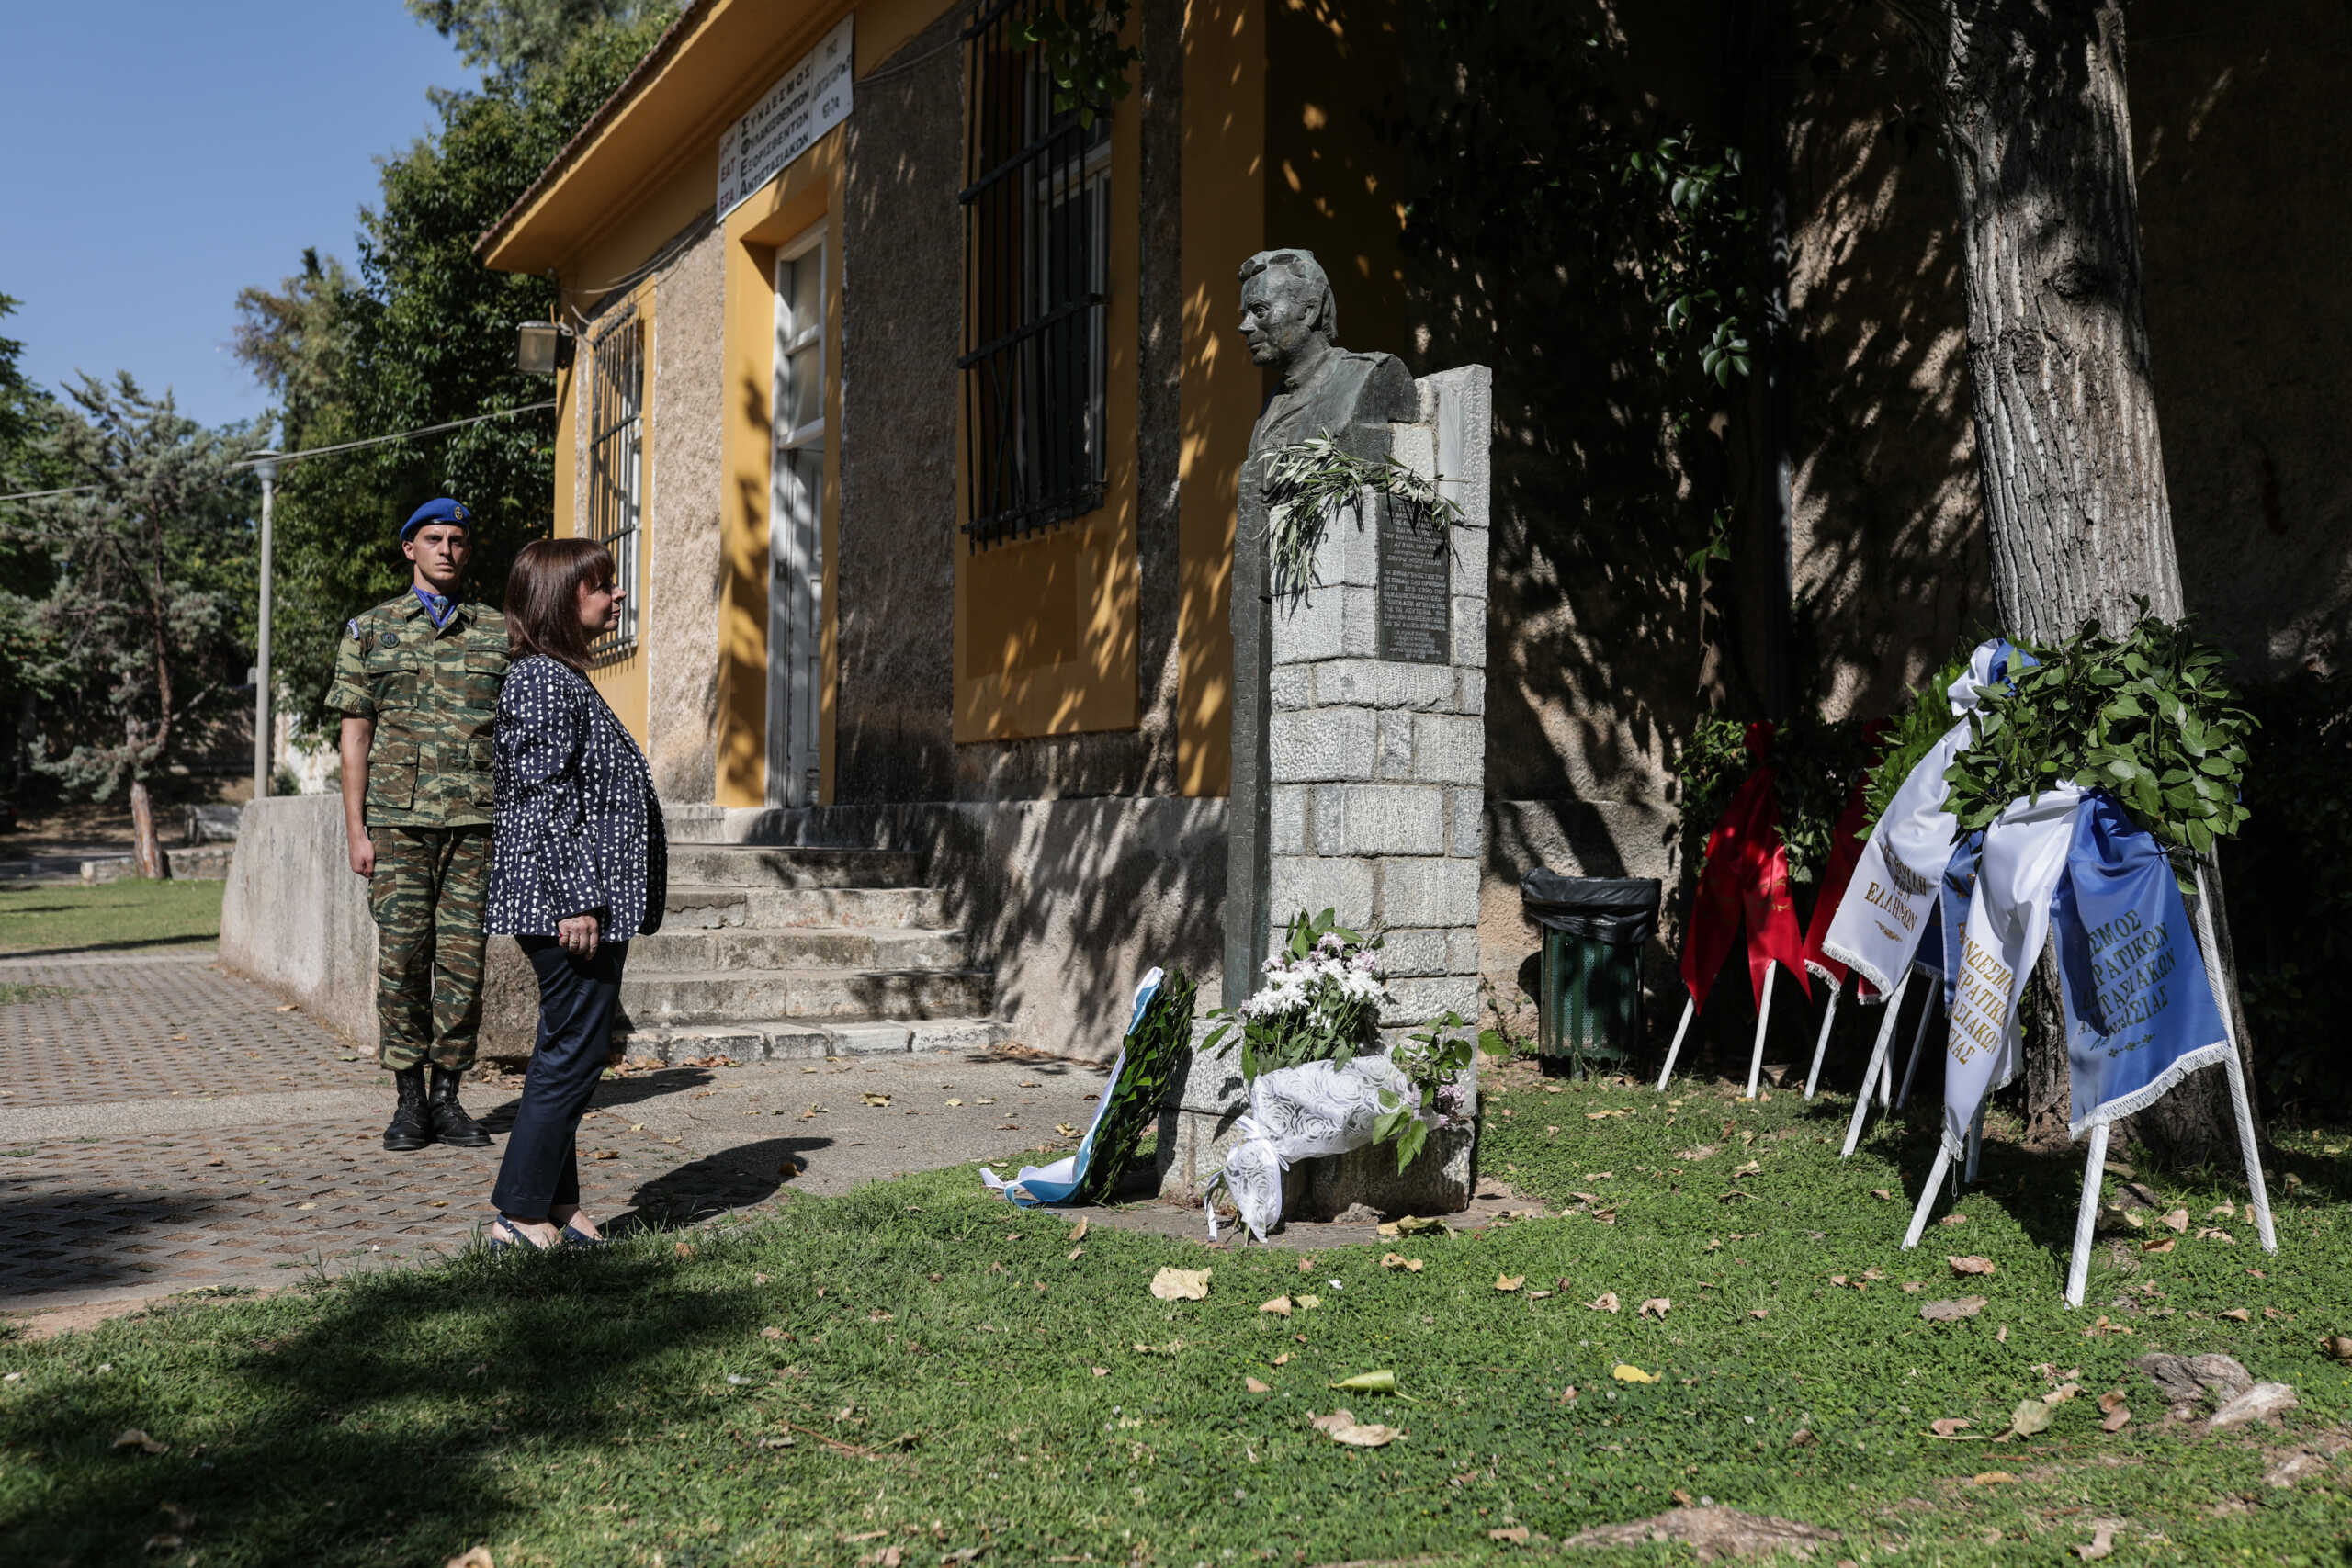 Επέτειος αποκατάστασης της Δημοκρατίας: Η Κατερίνα Σακελλαροπούλου κατέθεσε στεφάνι στην προτομή του Σπύρου Μουστακλή